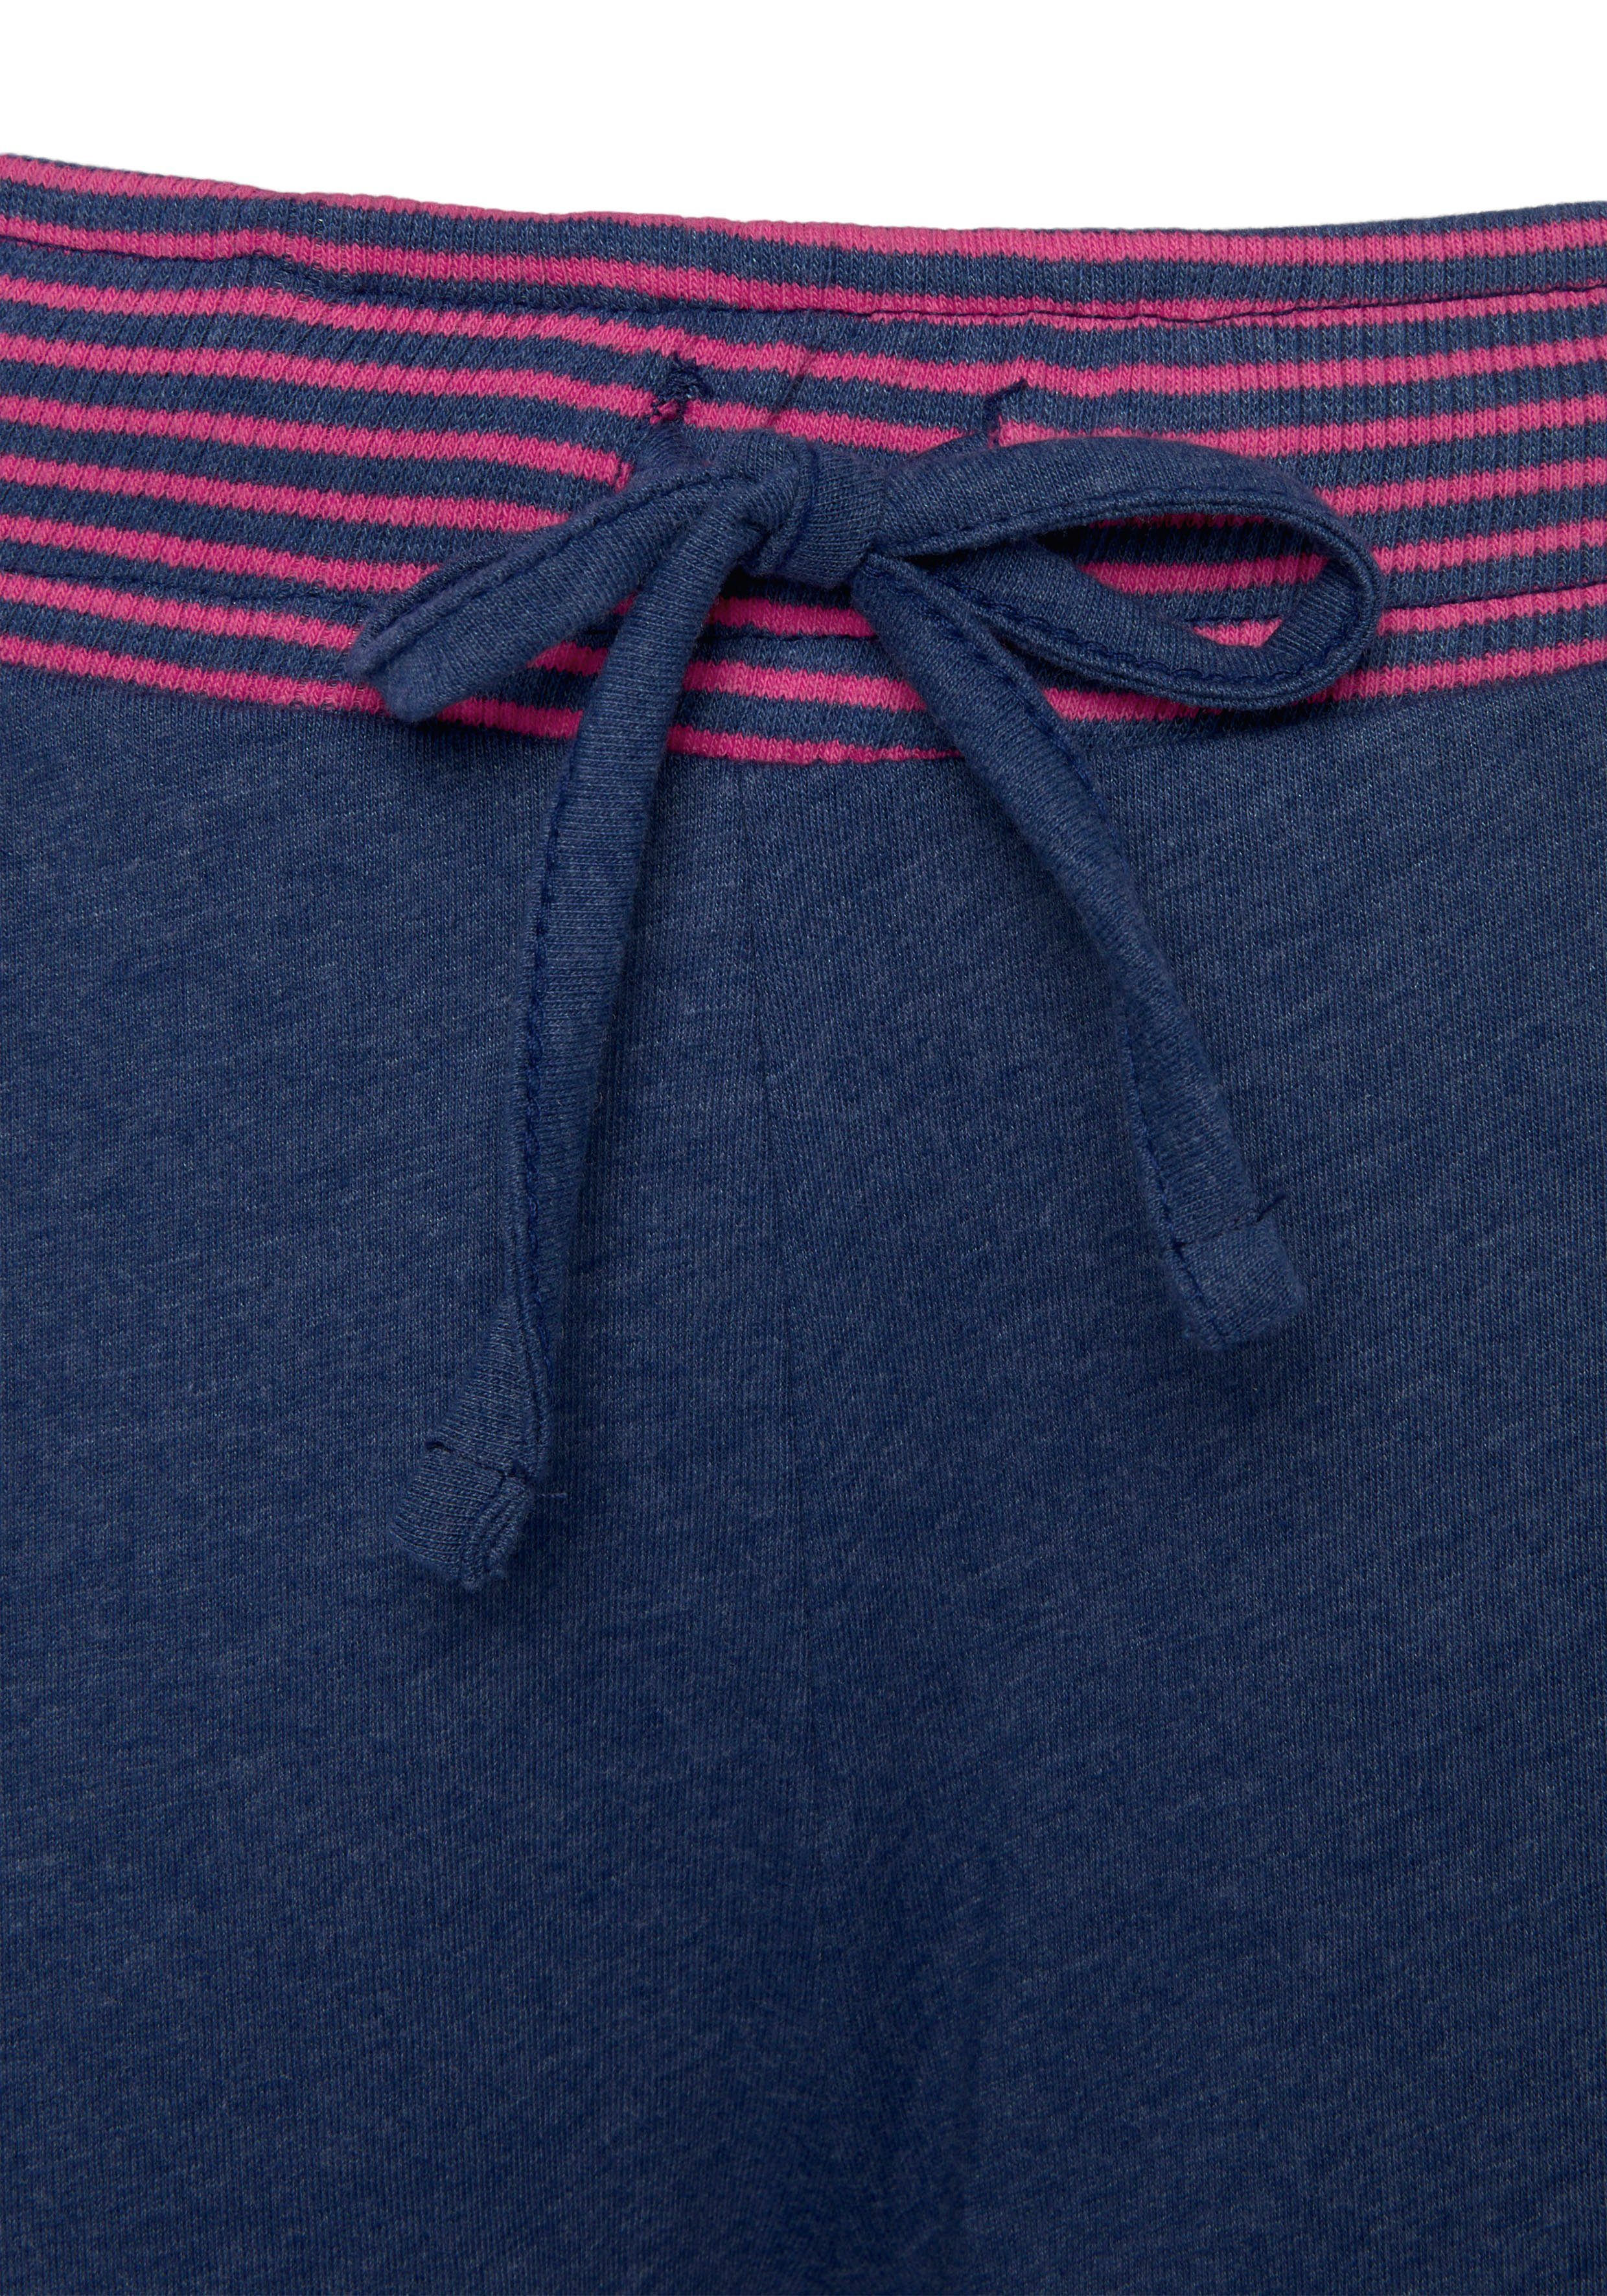 tlg) Pyjama Dreams Neonfarben in Flatlock-Nähten jeansblau/neon-pink dekorativen Vivance mit (2